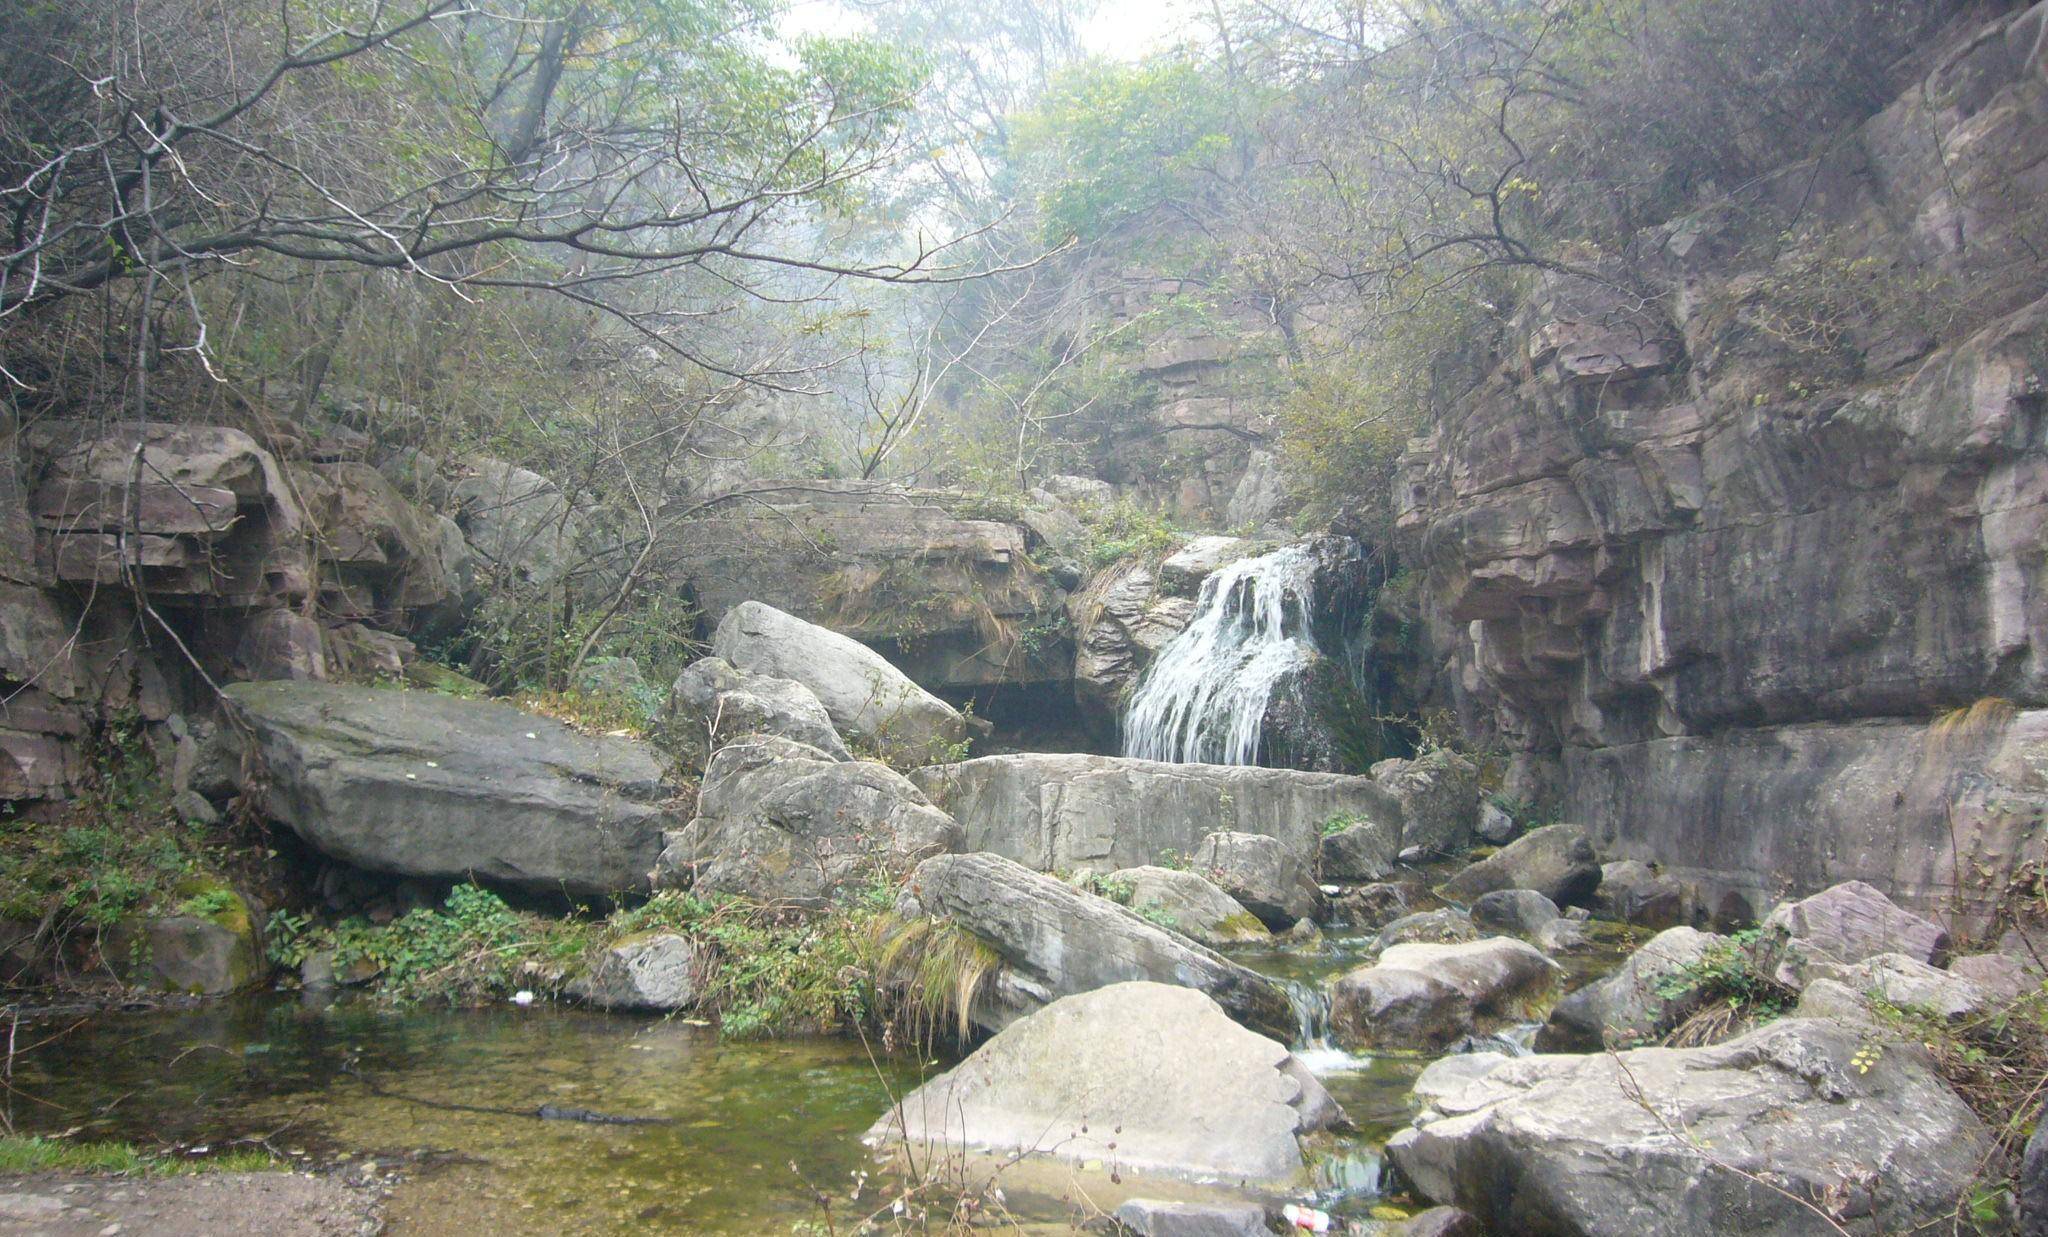 林州千瀑沟,一个原生态的自然山水景观所在,好玩儿还免费